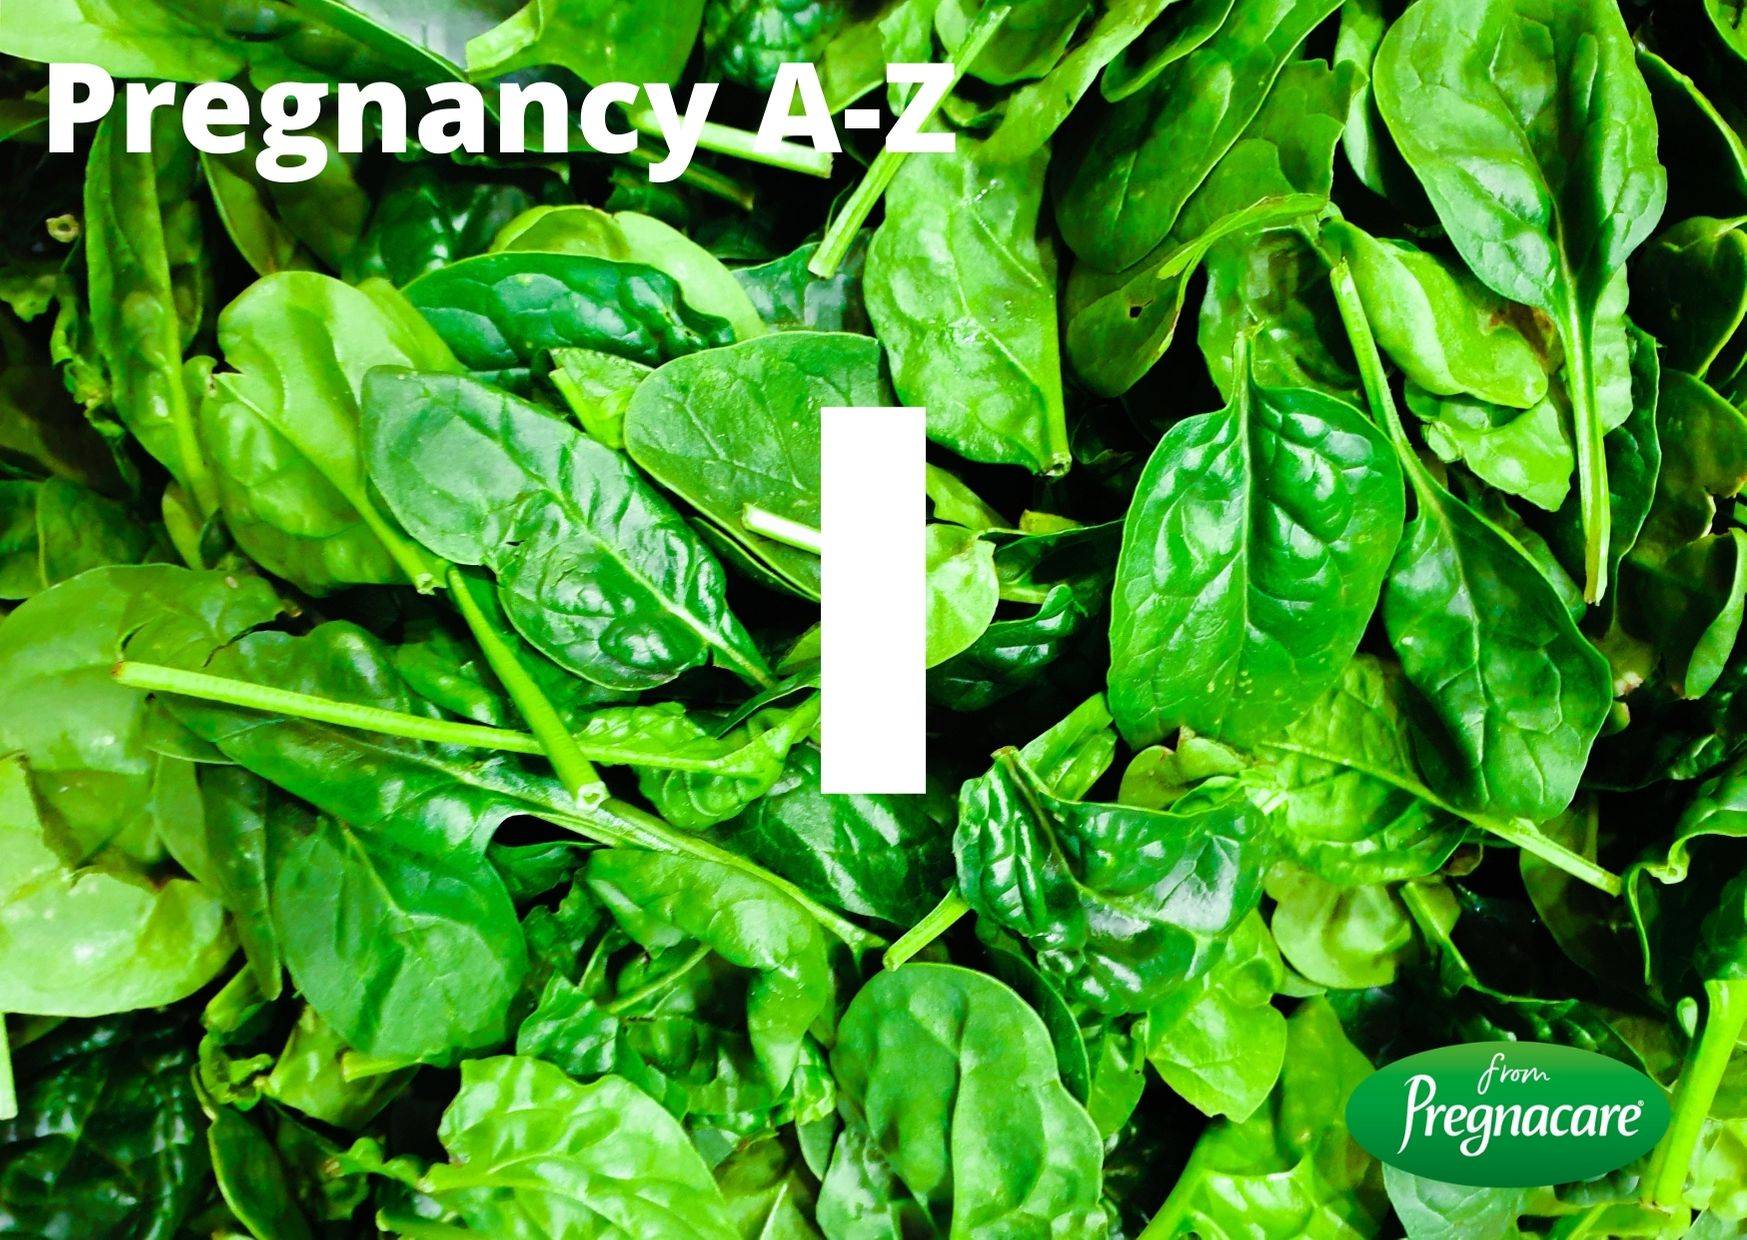 Pregnacare A-Z guide to pregnancy and birth